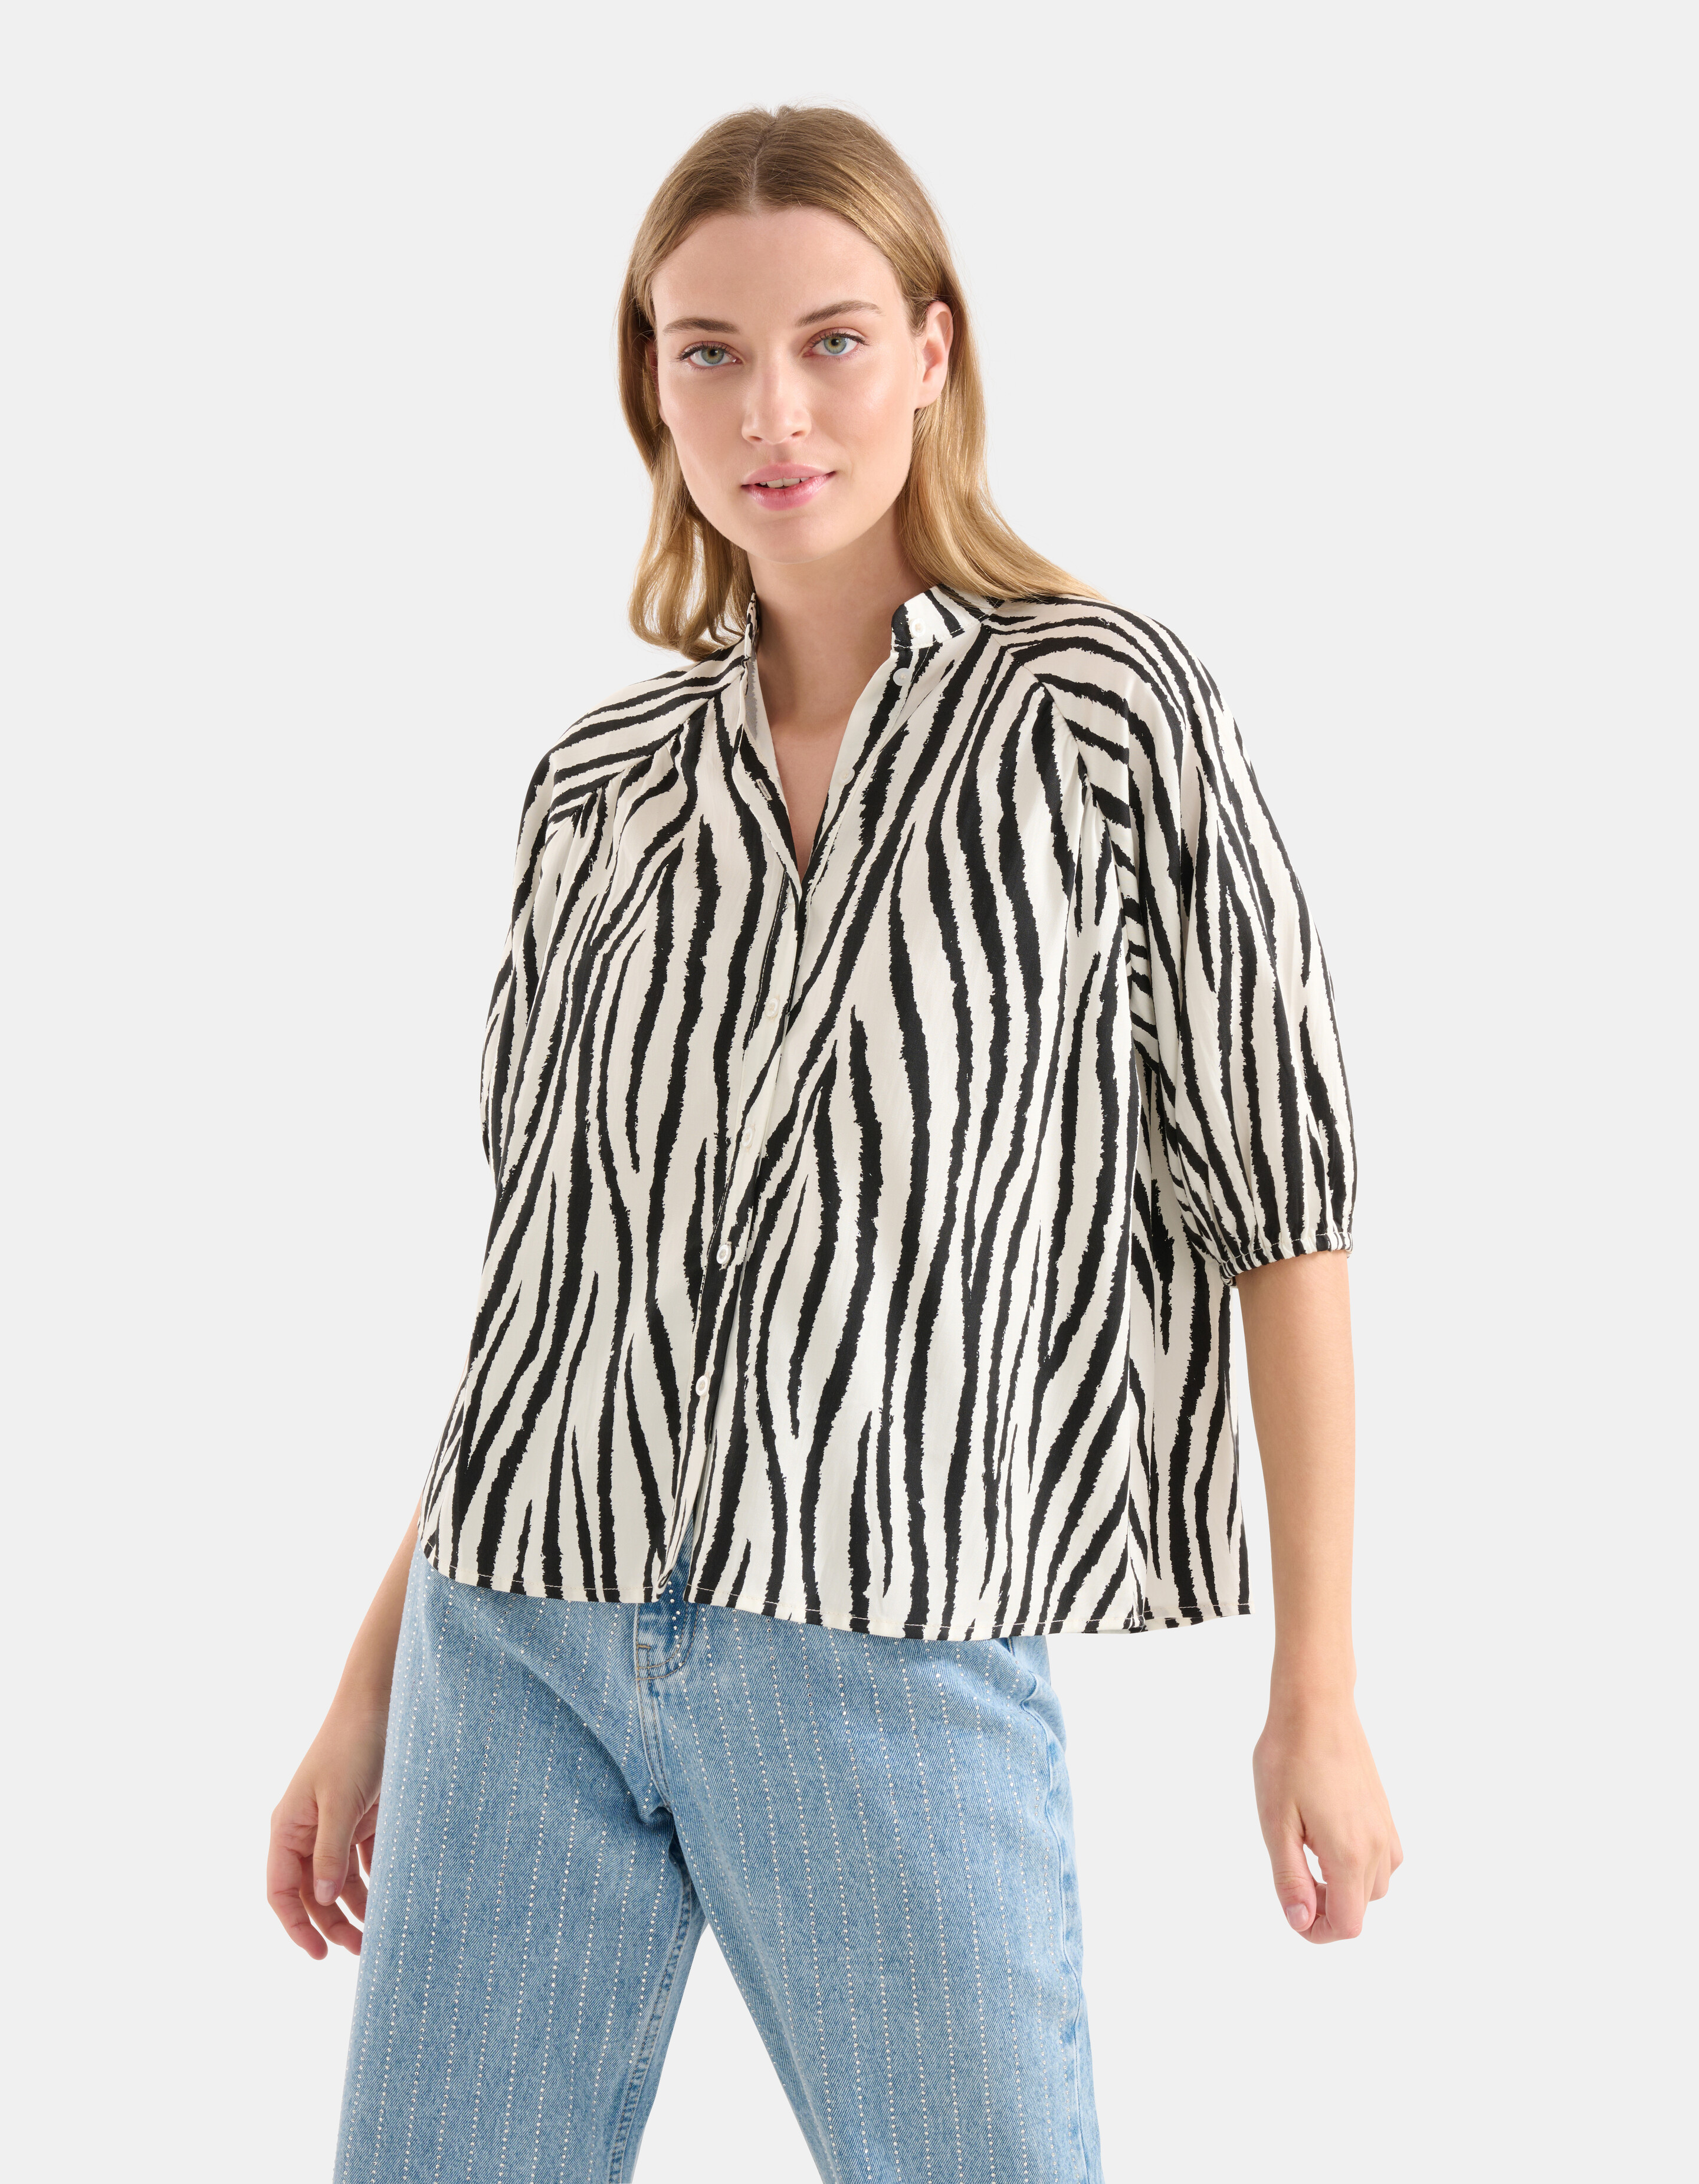 Bluse mit Zebradruck Schwarz/Weiß SHOEBY WOMEN